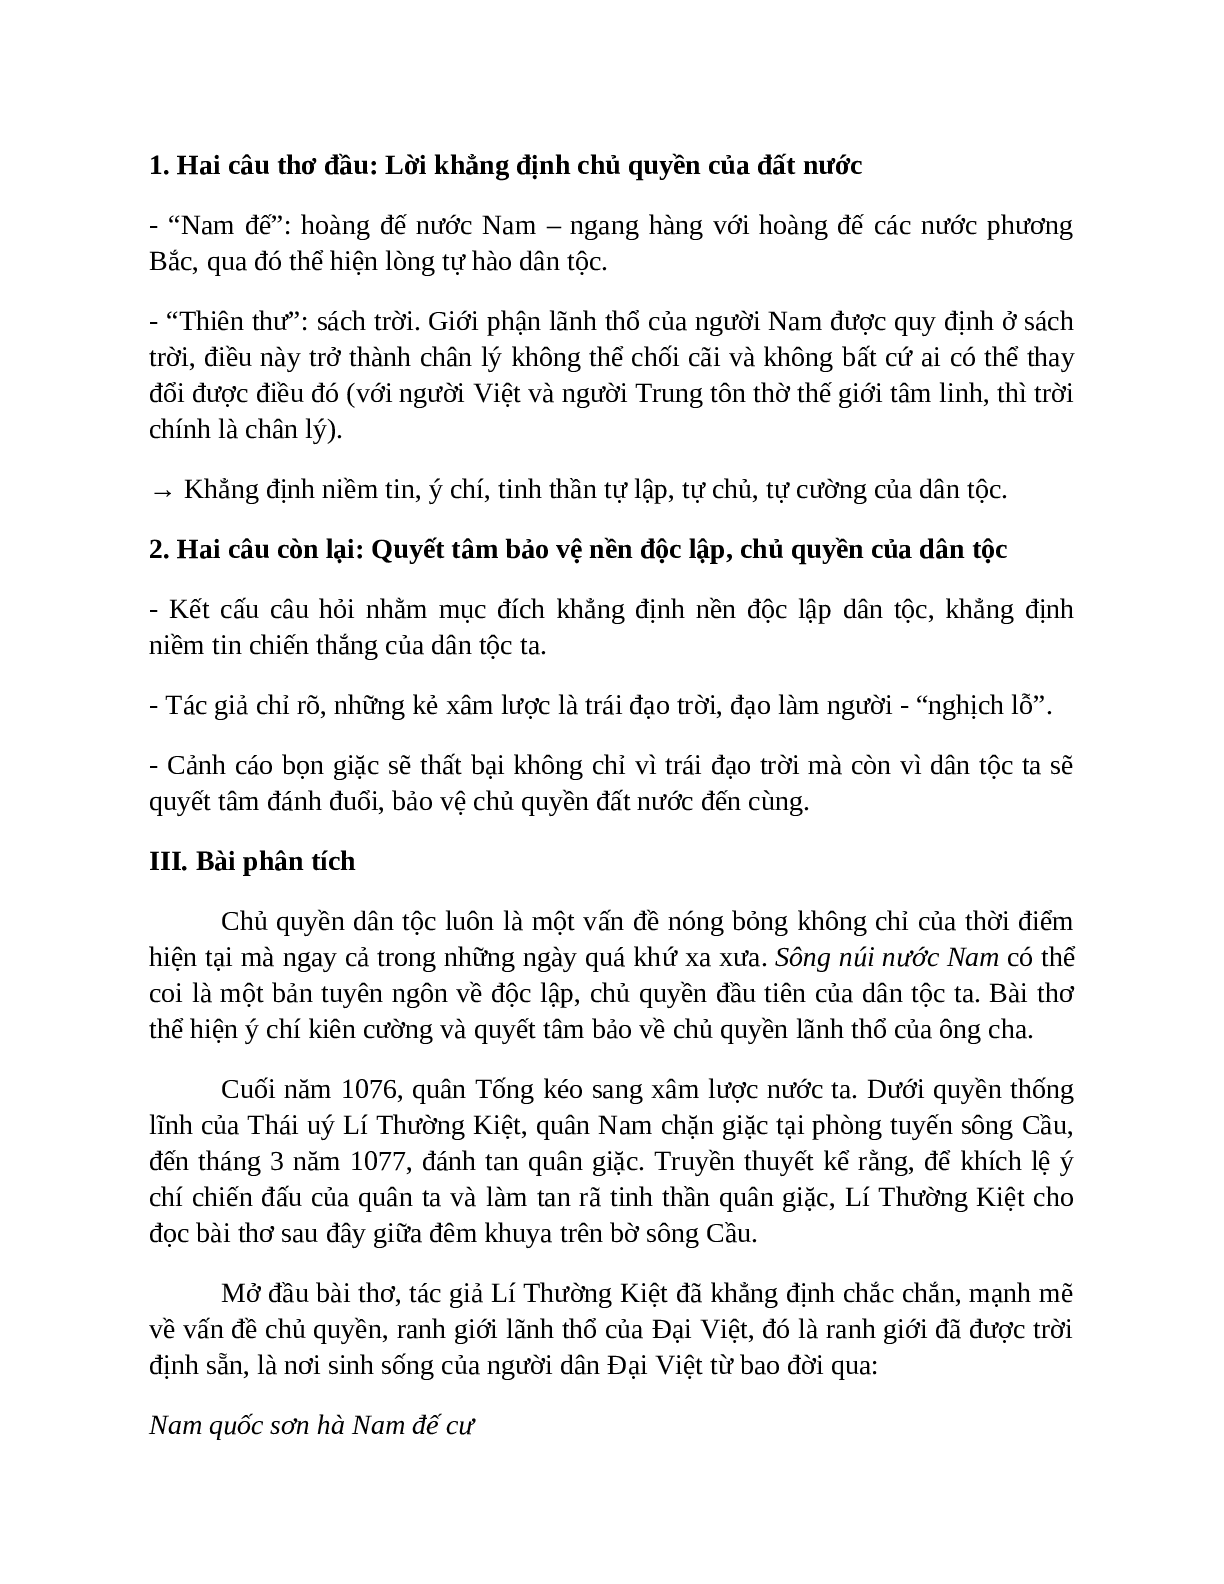 Sơ đồ tư duy bài Sông núi nước Nam dễ nhớ, ngắn nhất - Ngữ văn lớp 7 (trang 3)